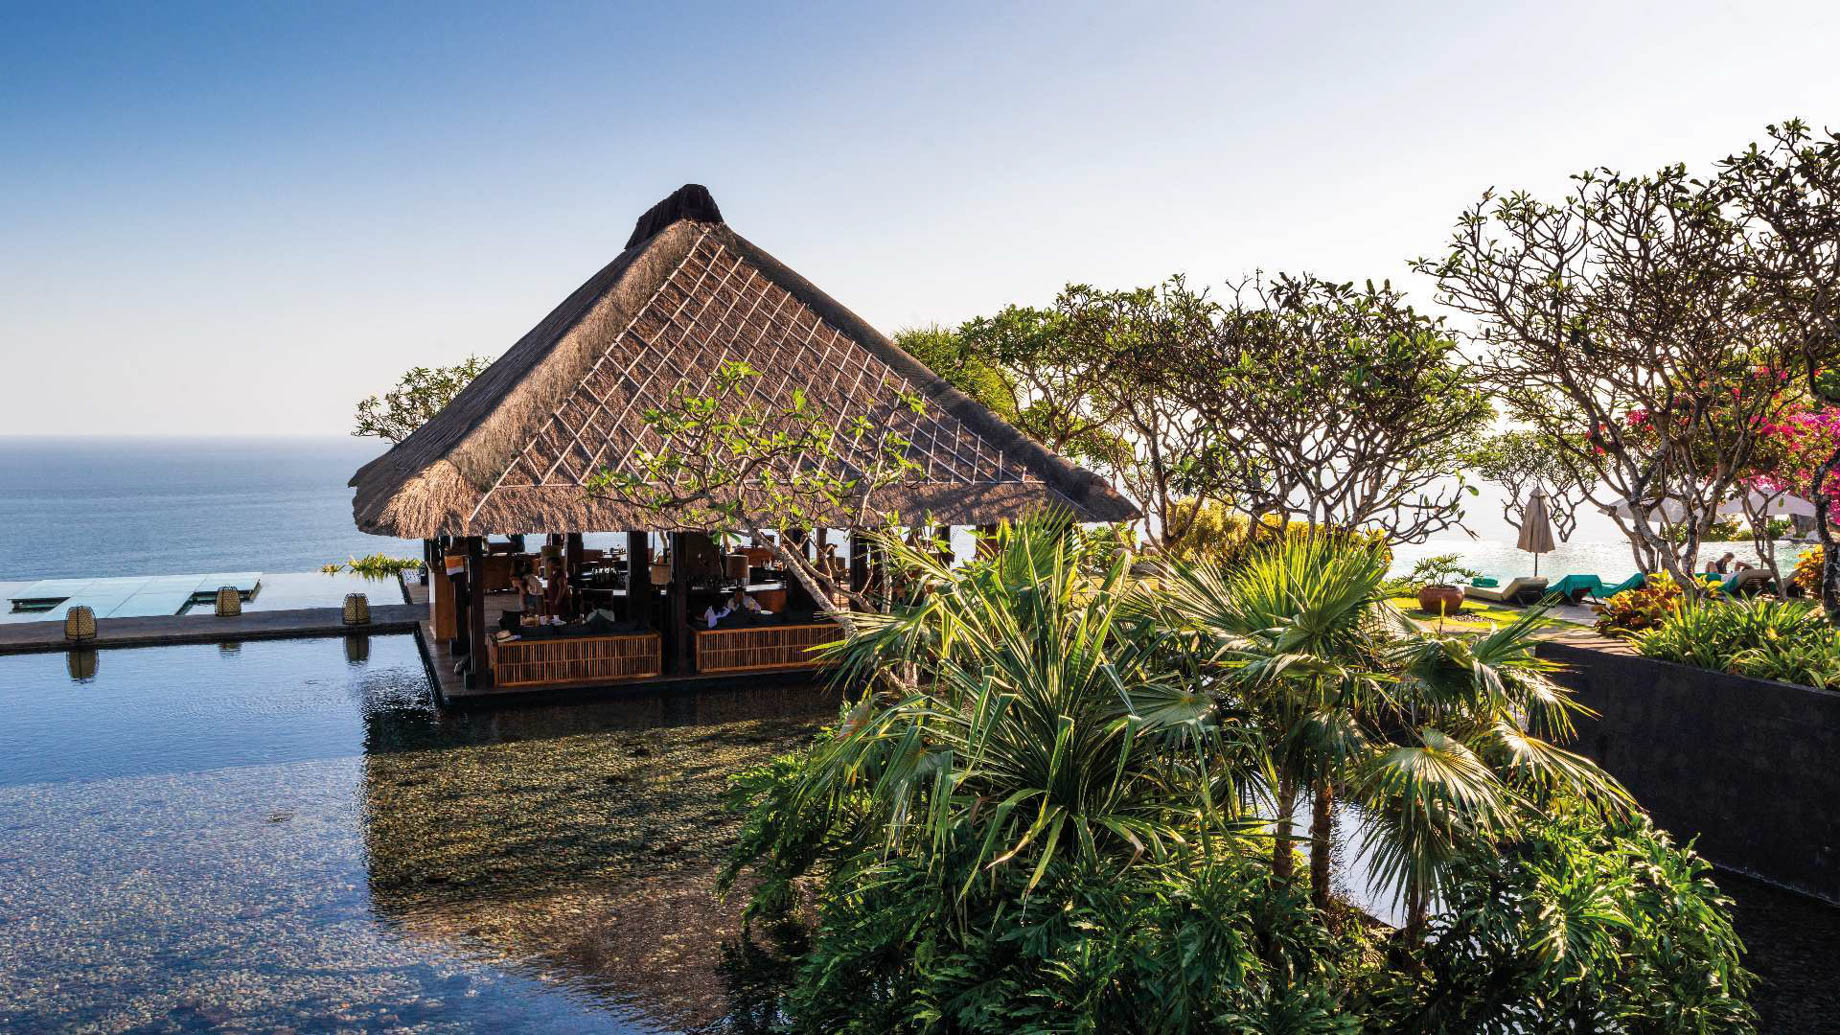 Bvlgari Resort Bali - Uluwatu, Bali, Indonesia - Bvlgari Bar Ocean View